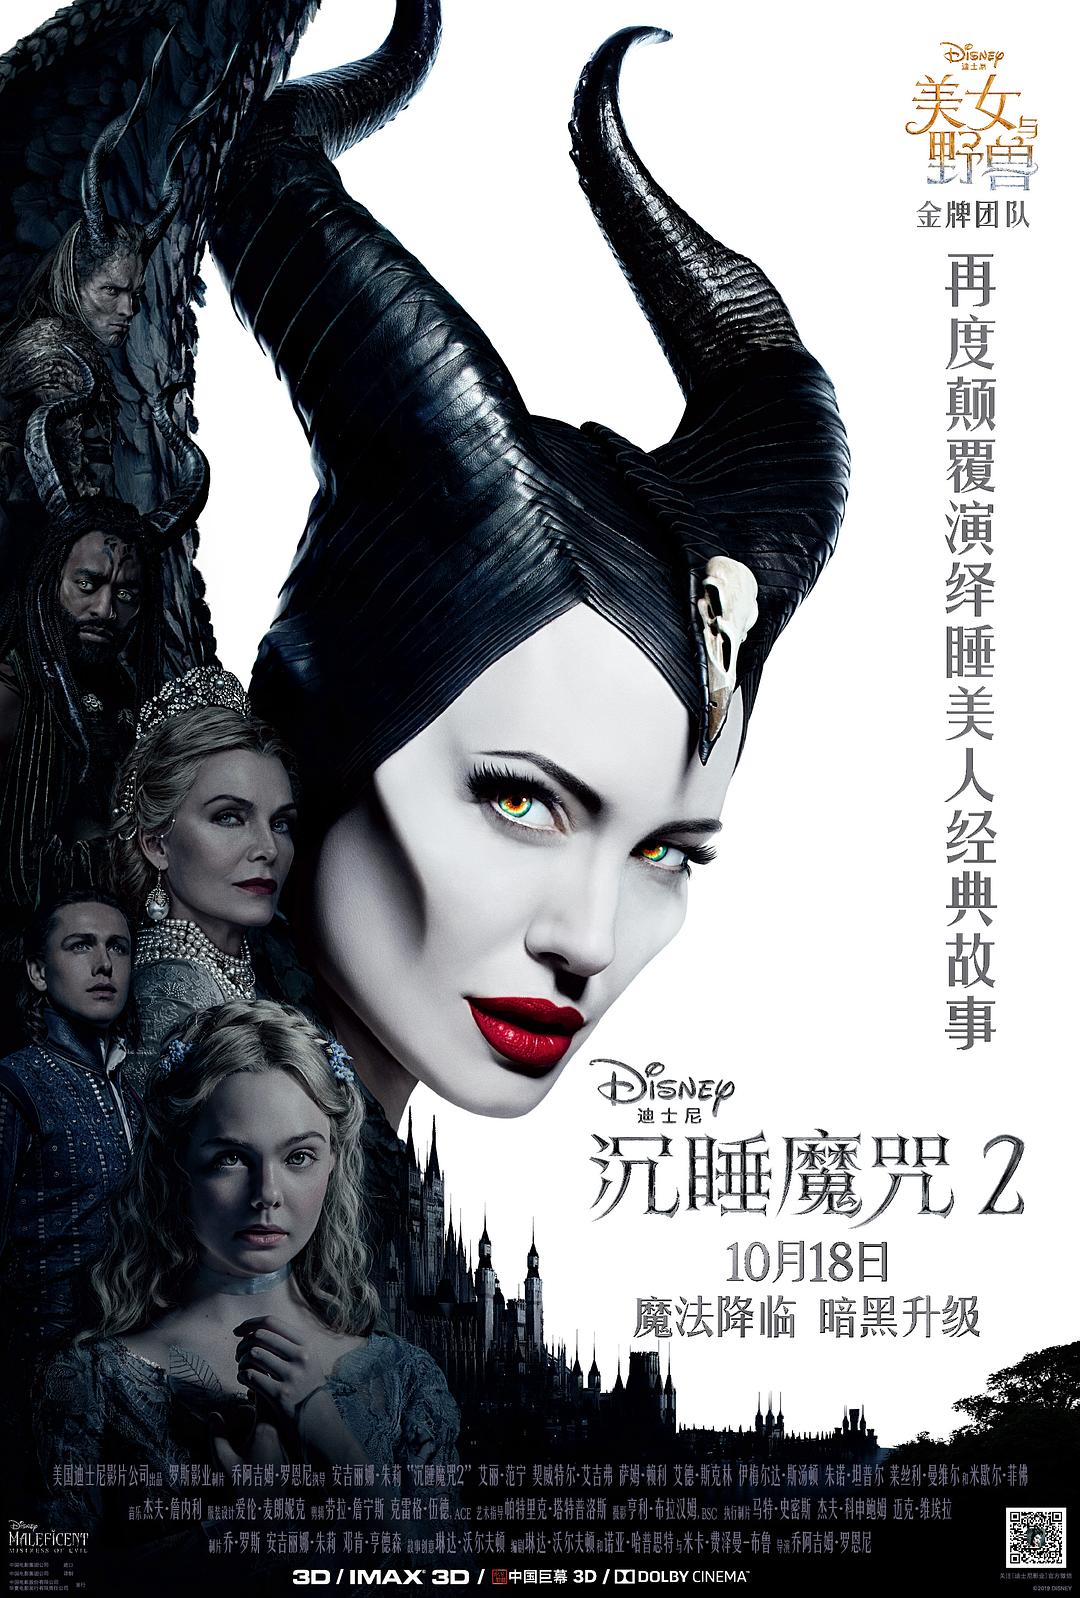 沉睡魔咒2 Maleficent.Mistress.of.Evil.2019.1080p.BluRay.AVC.DTS-HD.MA.7.1-FGT 41.61GB-1.png